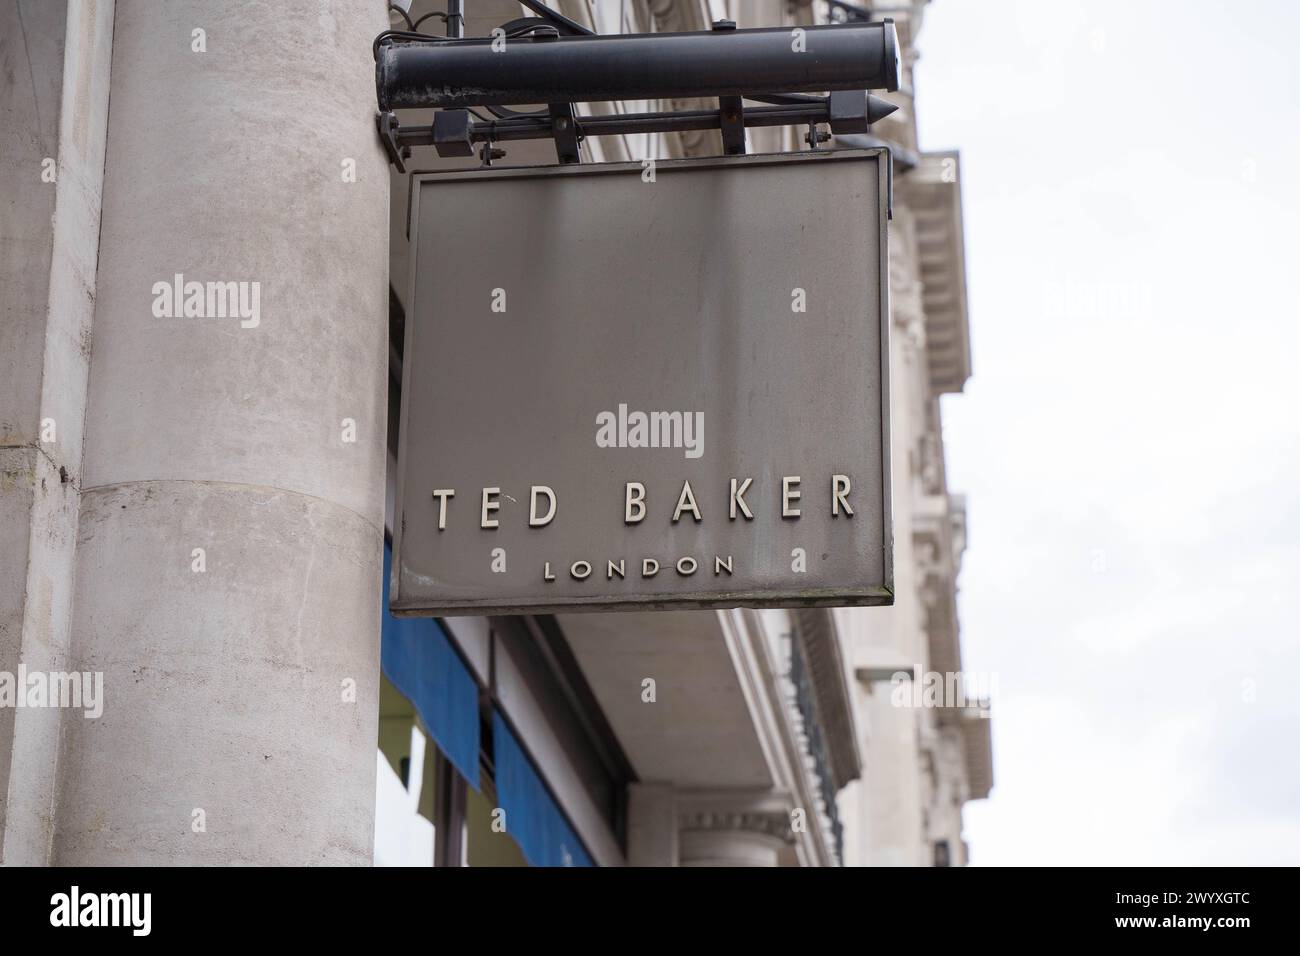 Londres Royaume-Uni , 8 avril 2024. Ted boulanger Londres fermera 15 magasins en Angleterre, les acheteurs devant Regent Street store Londres Angleterre Royaume-Uni. Crédit : Xiu Bao/Alamy Live News Banque D'Images